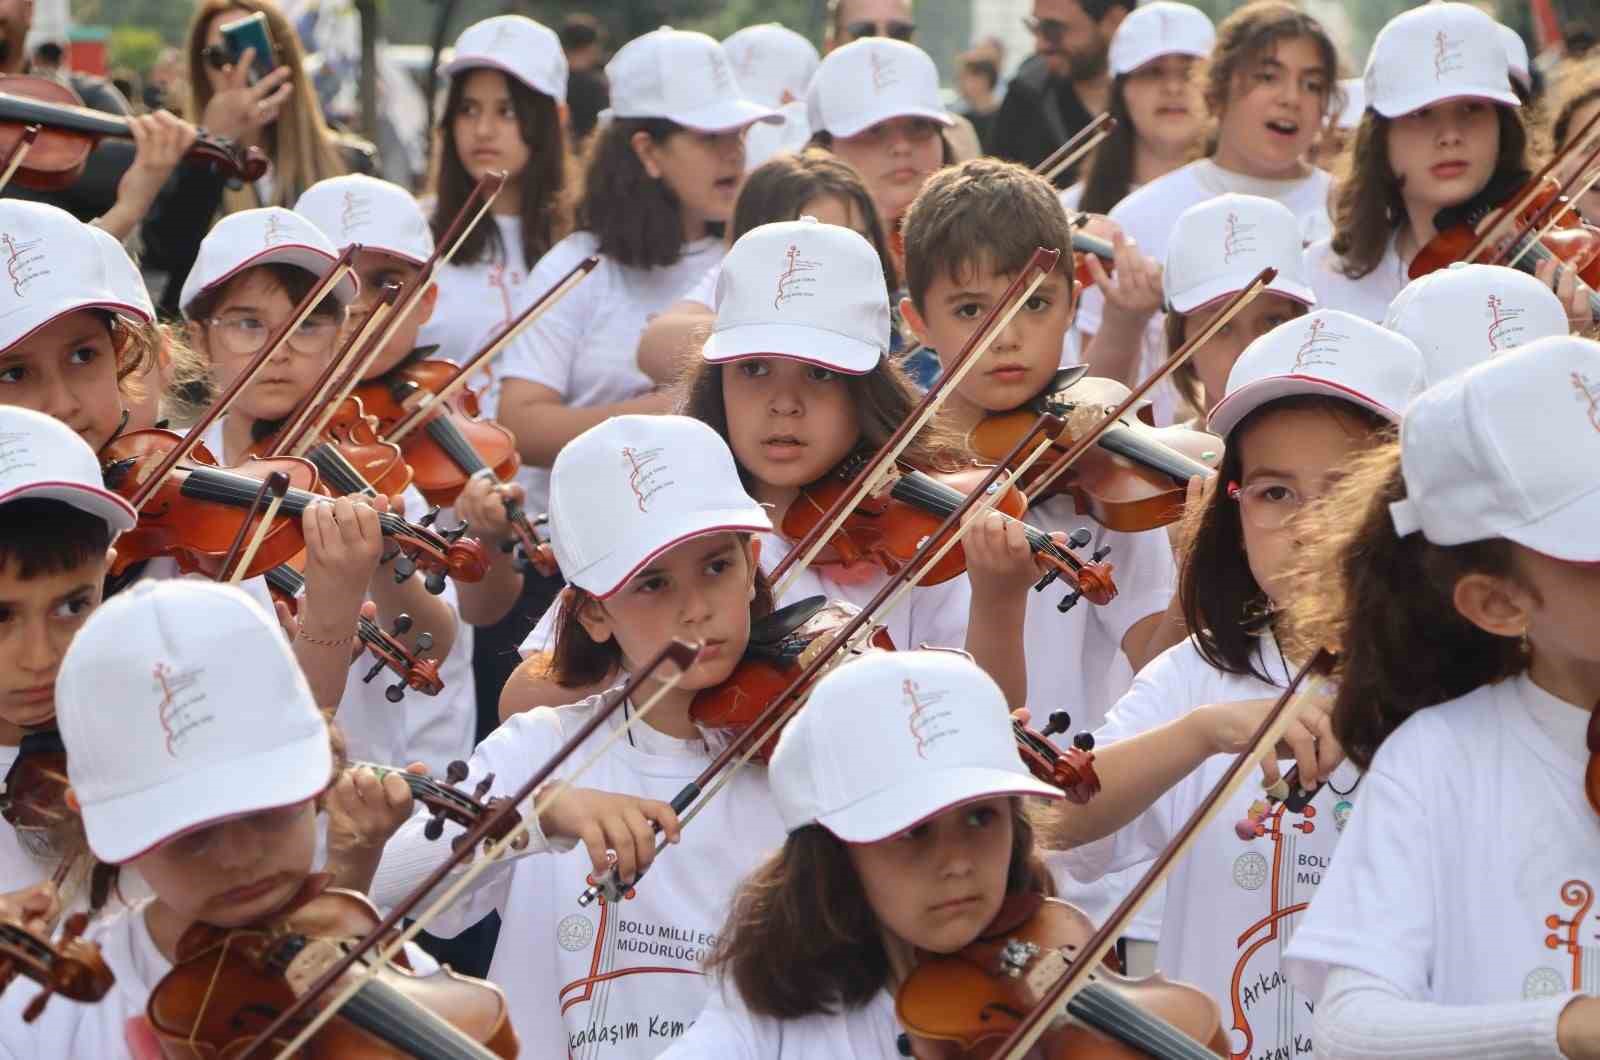 Depremzede küçük müzisyenlerden Bolu’da keman konseri
